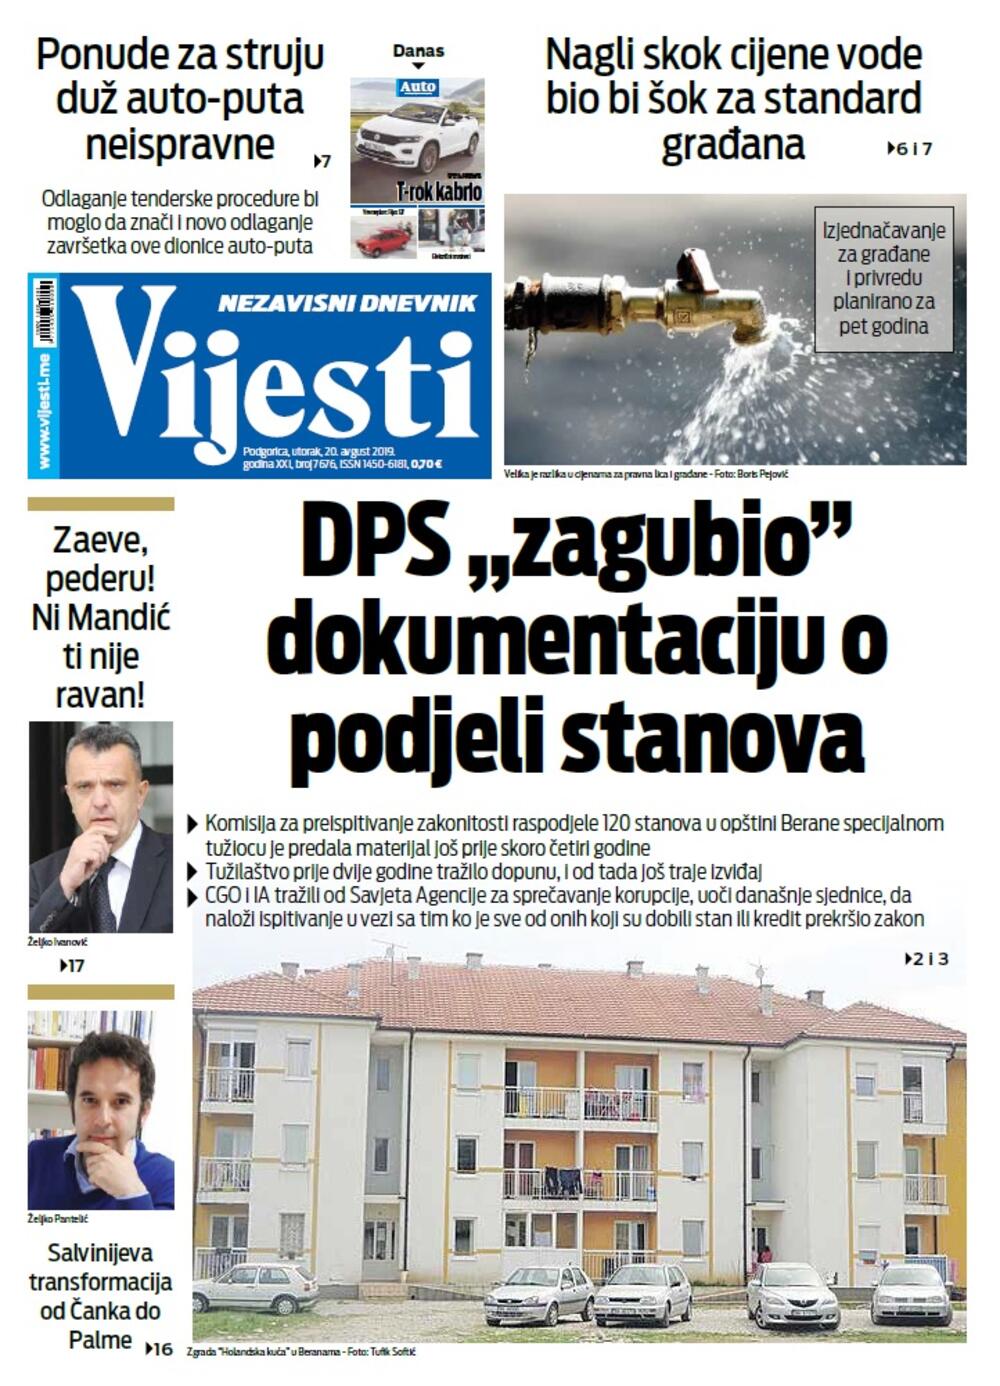 Naslovna strana "Vijesti" za 20. avgust, Foto: Vijesti